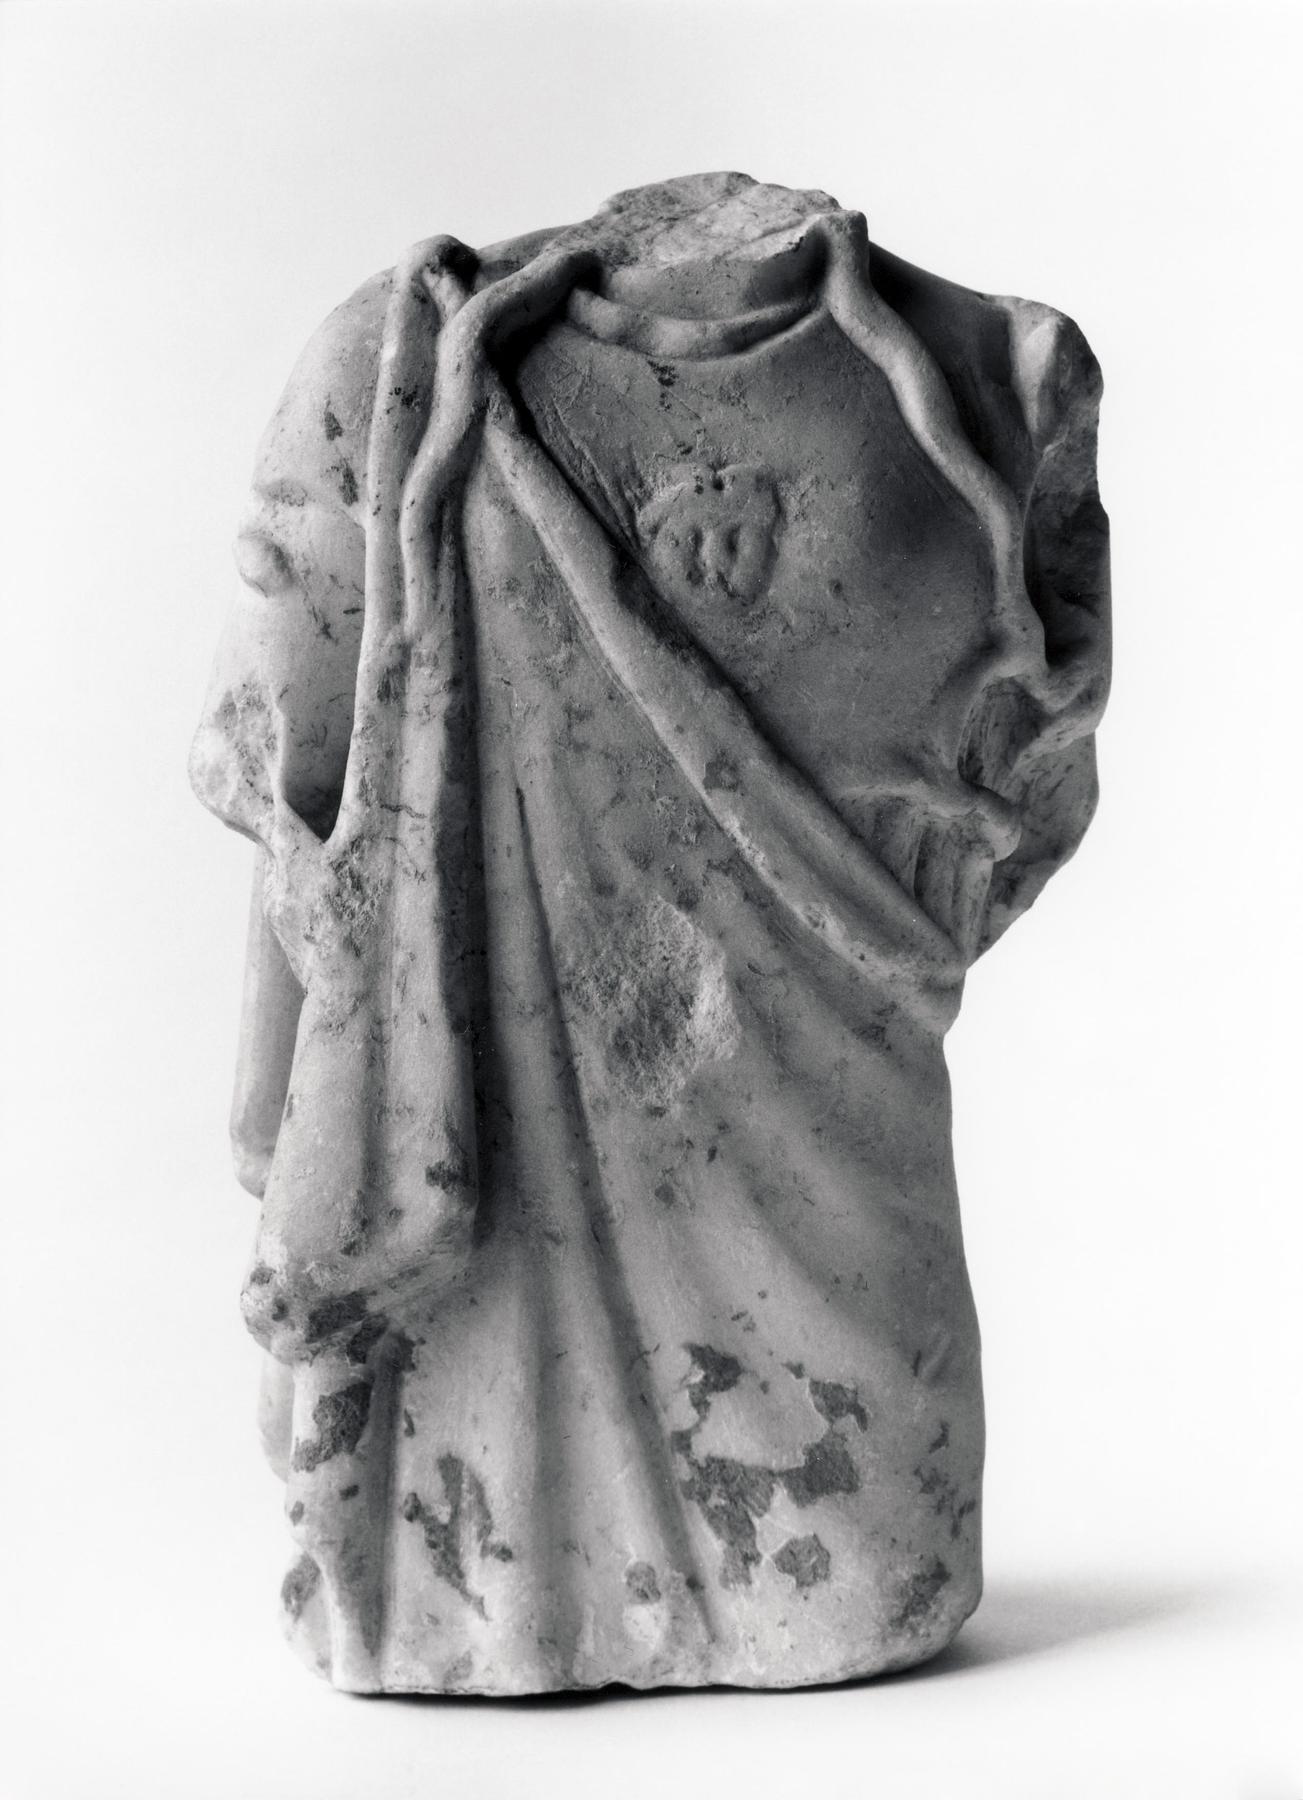 Statuette af Athene/Minerva, H1404